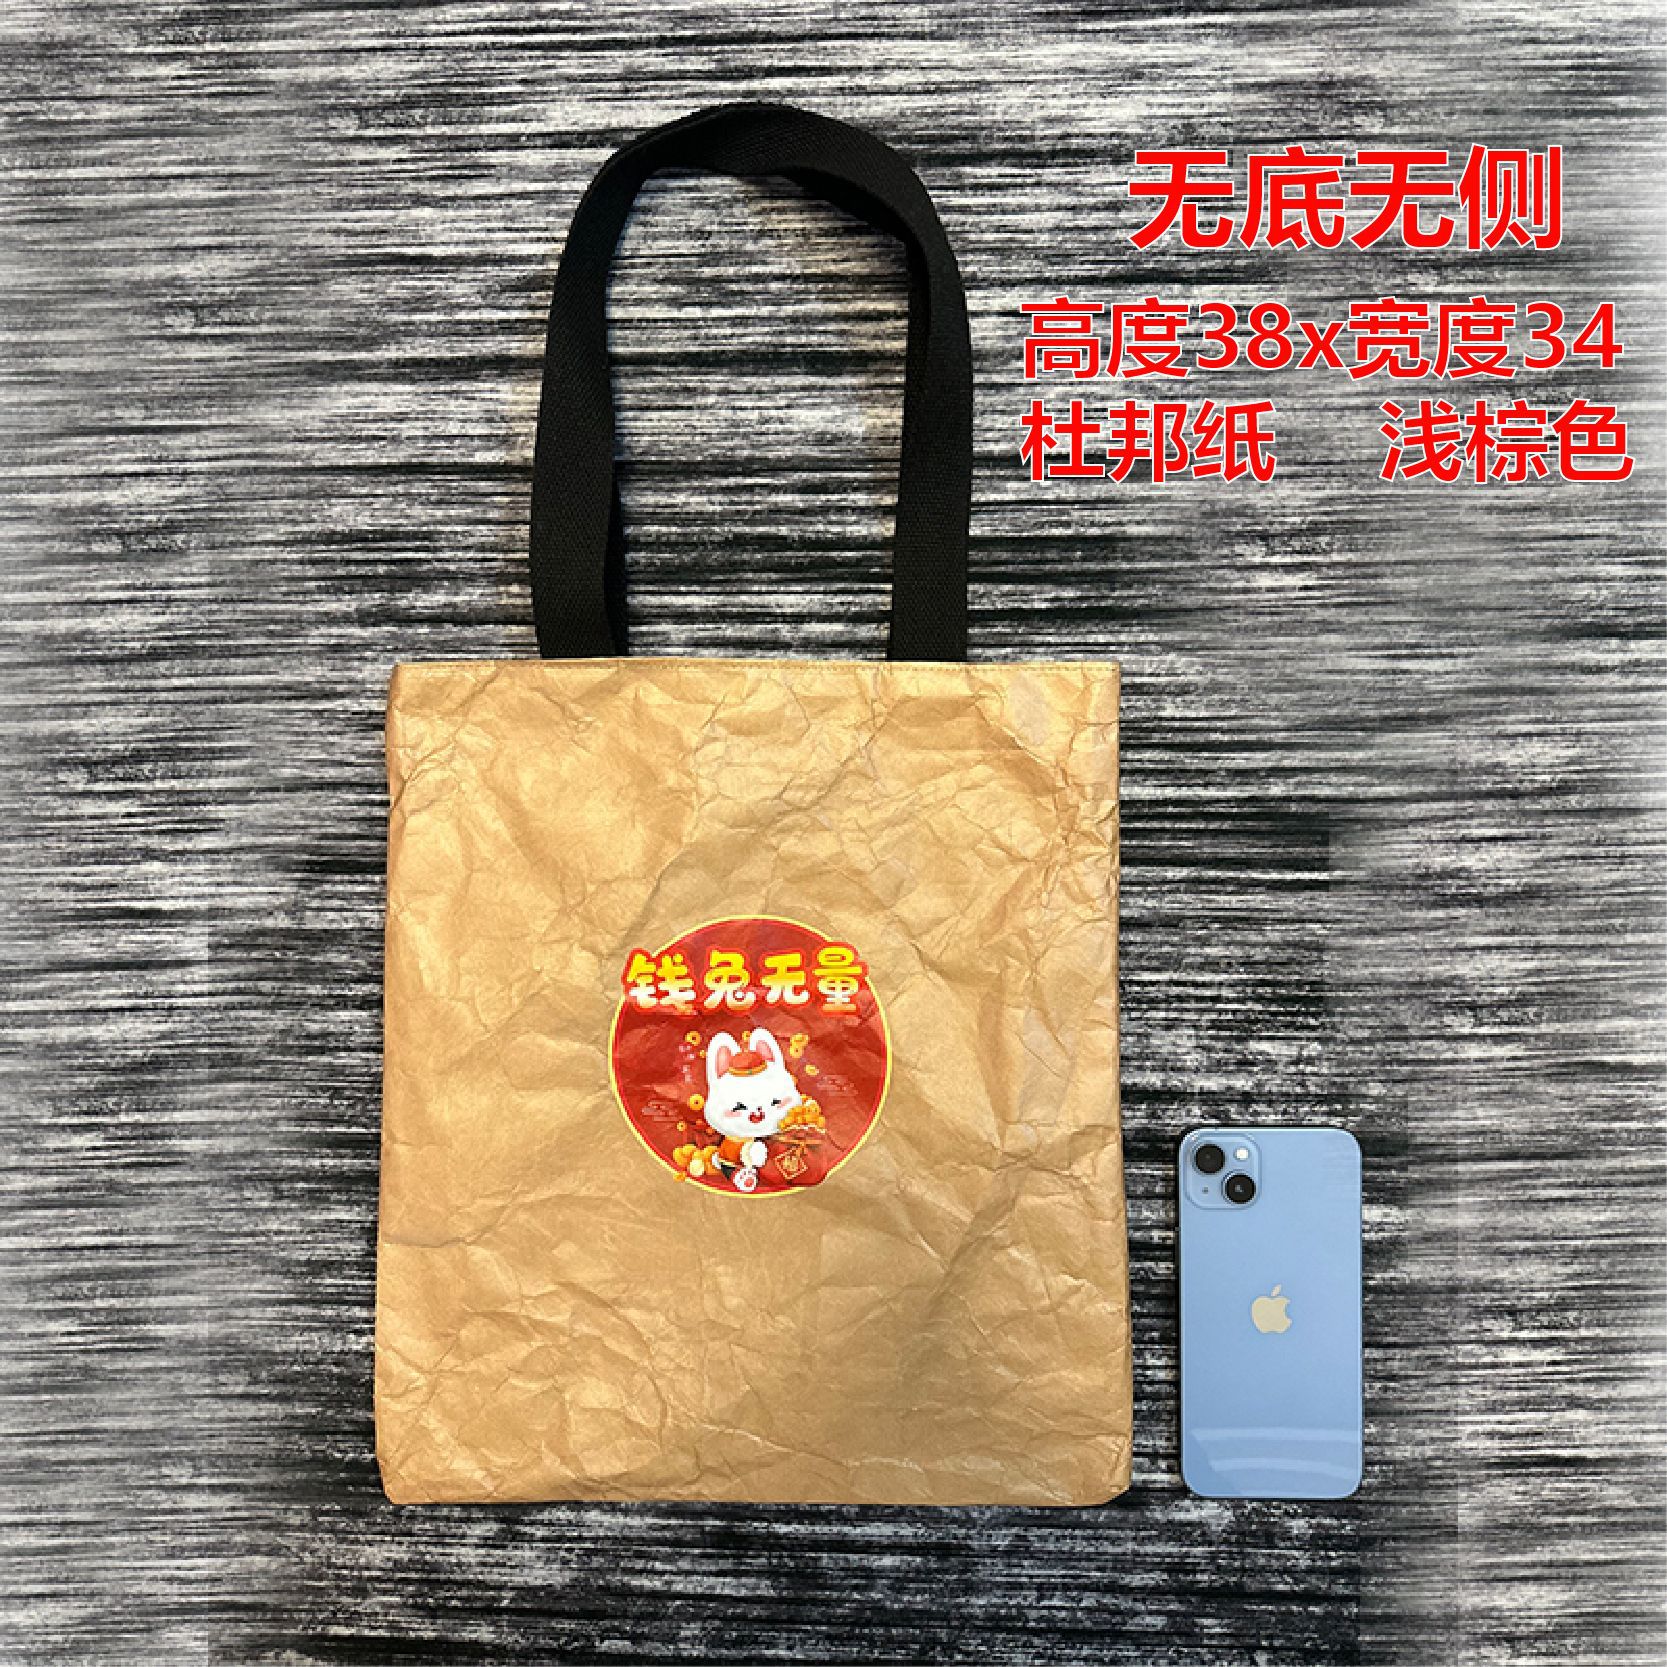 Printable Logo DuPont Paper Bag Washed and Rubbed Pattern Tear-Proof Shopping Bag Vintage Cowhide DuPont Paper Bag Handbag